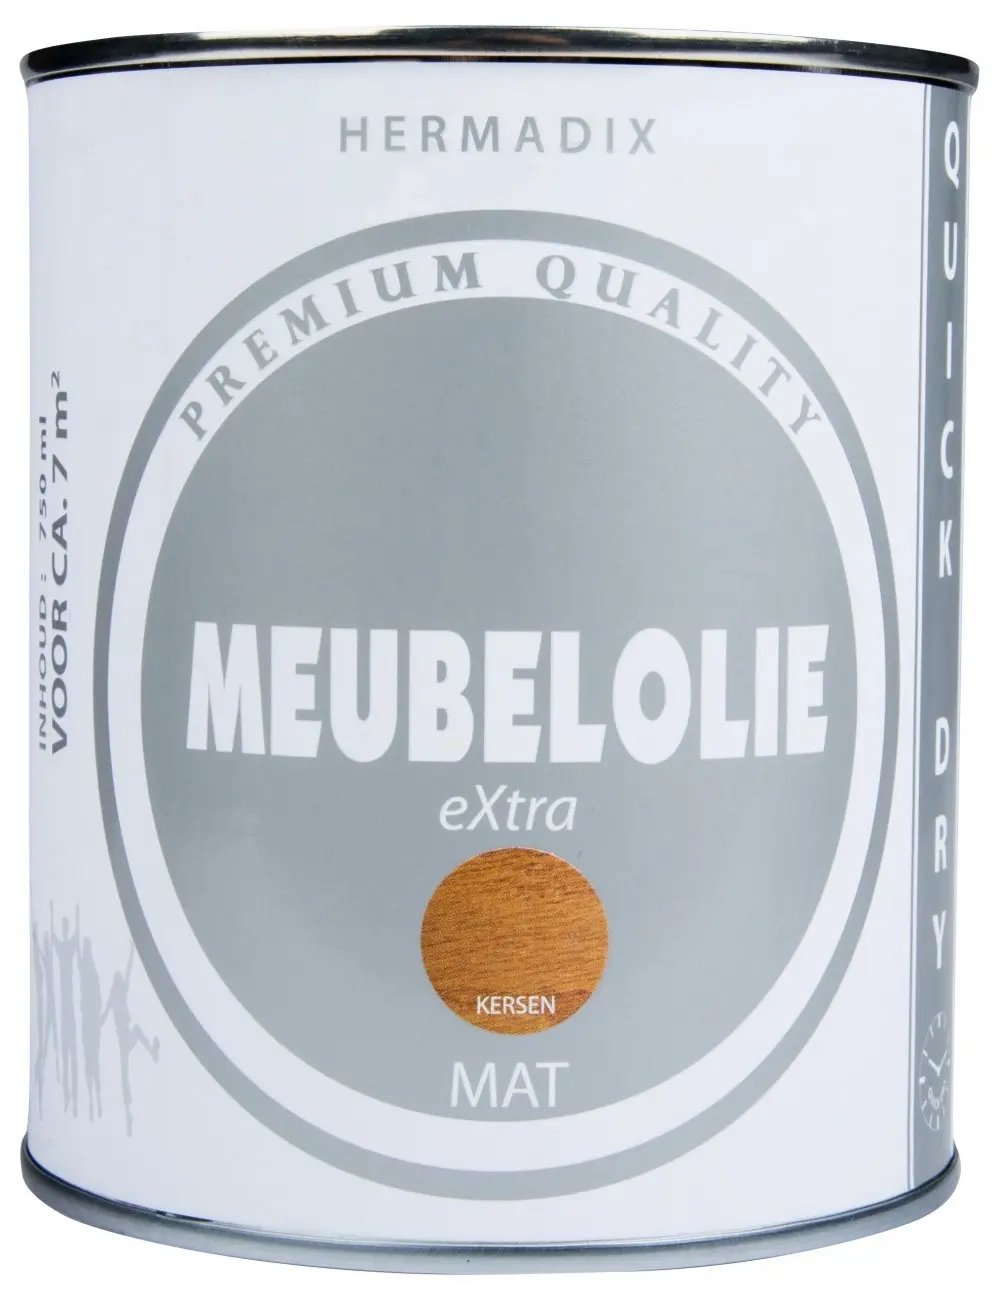 Houtolie - hermadix-meubellolie-extra-mat-kersen-verfcompleet.nl